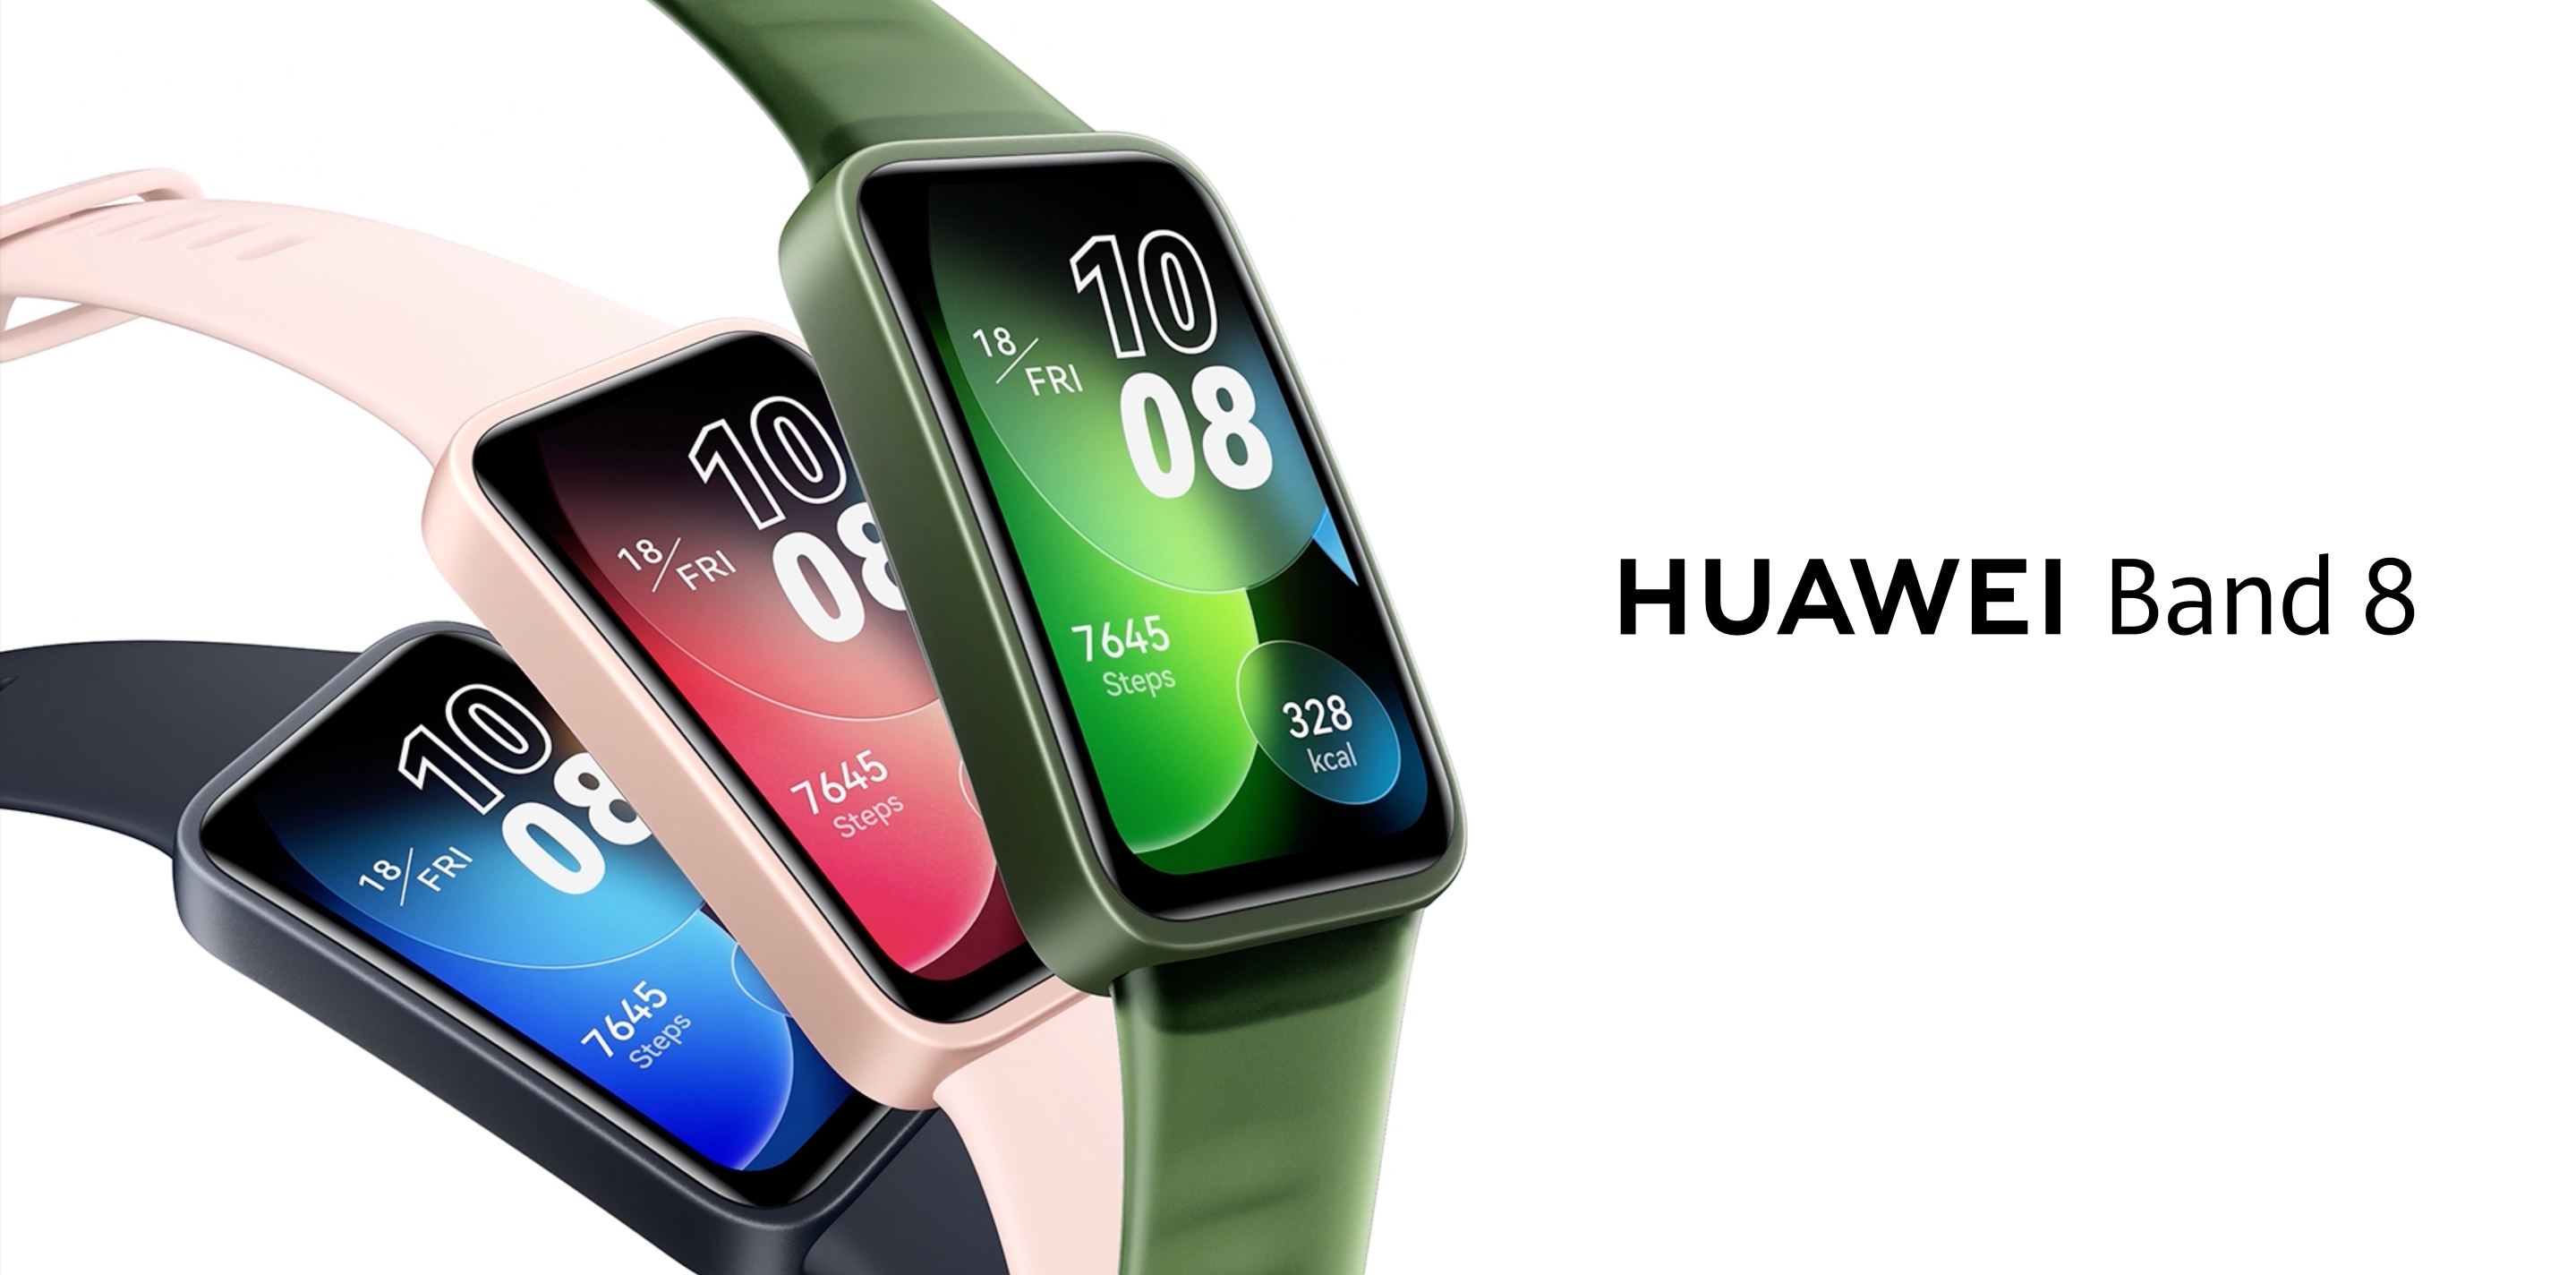 Huawei Band 8 con schermo AMOLED, sensore SpO2 e durata della batteria fino a 14 giorni viene rilasciato fuori dalla Cina